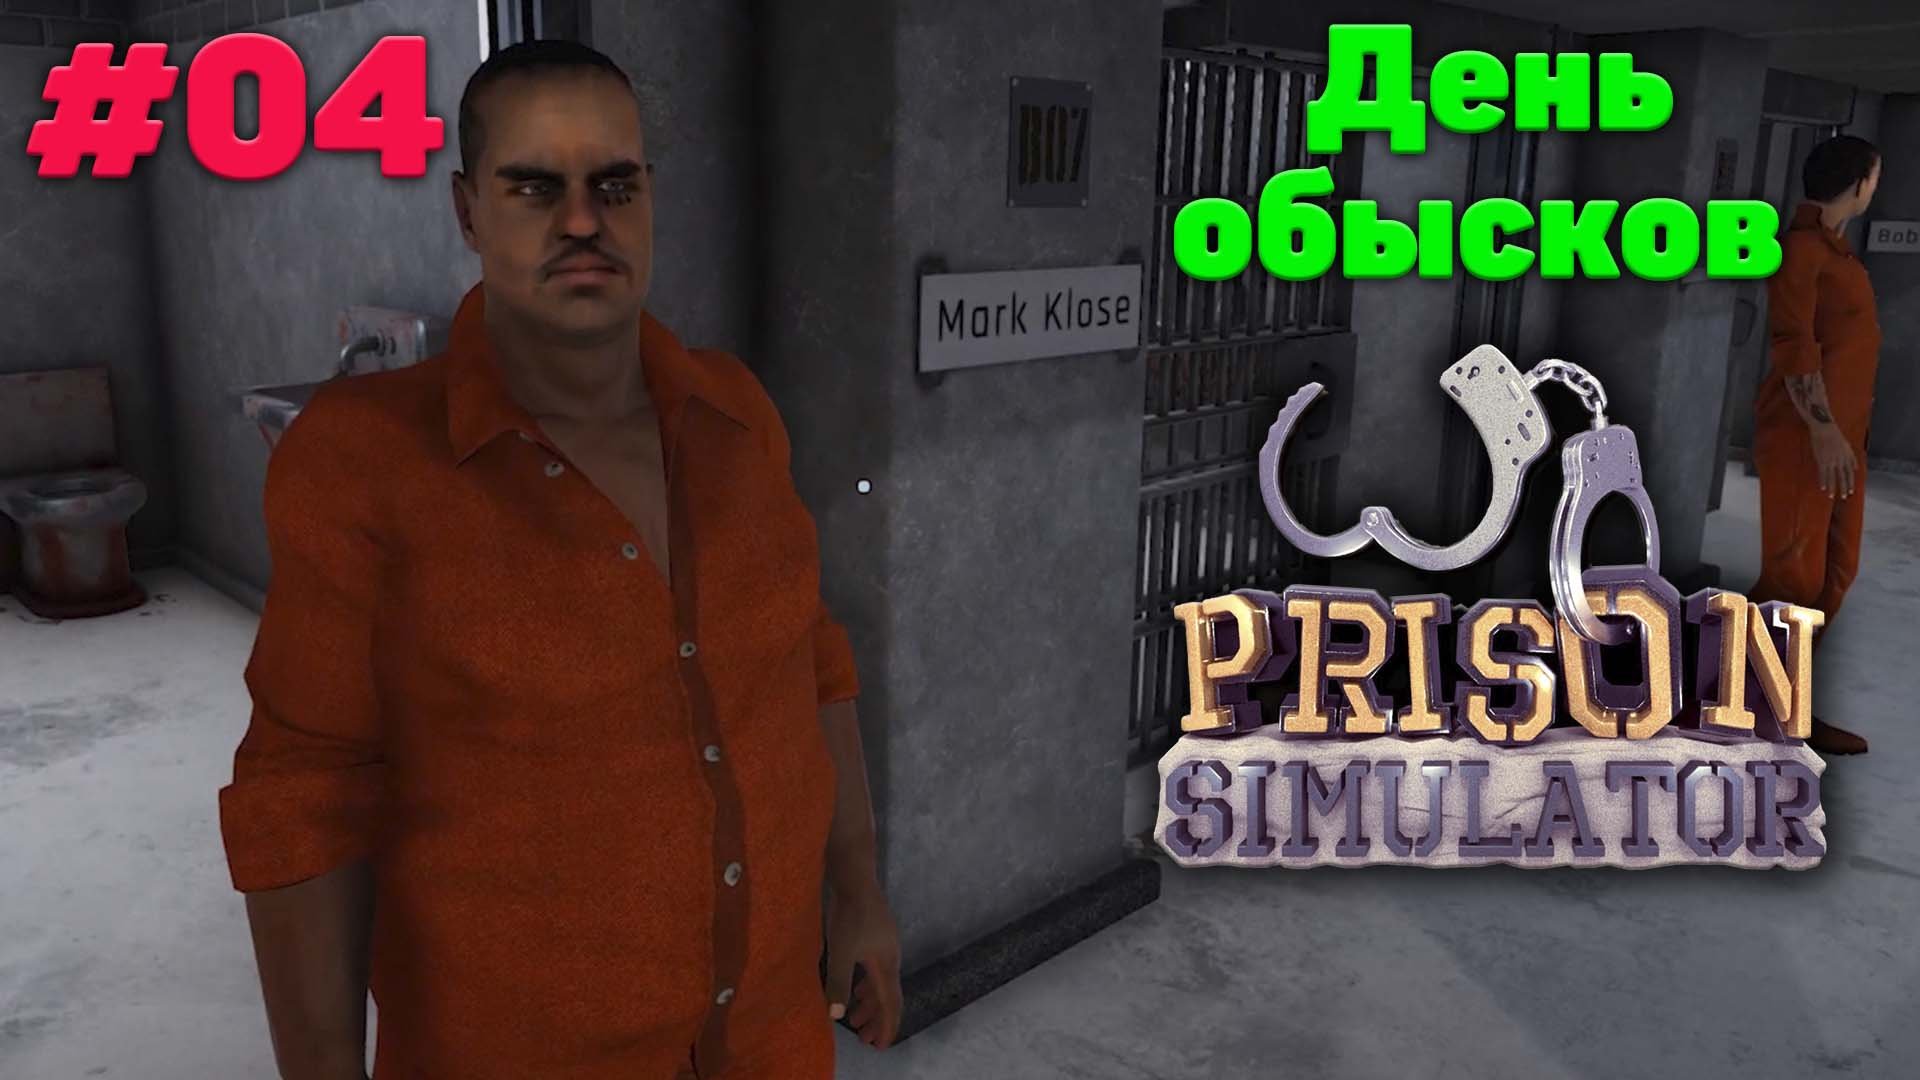 Поиски украденного кольца и запрещенка - Прохождение Prison Simulator - 04